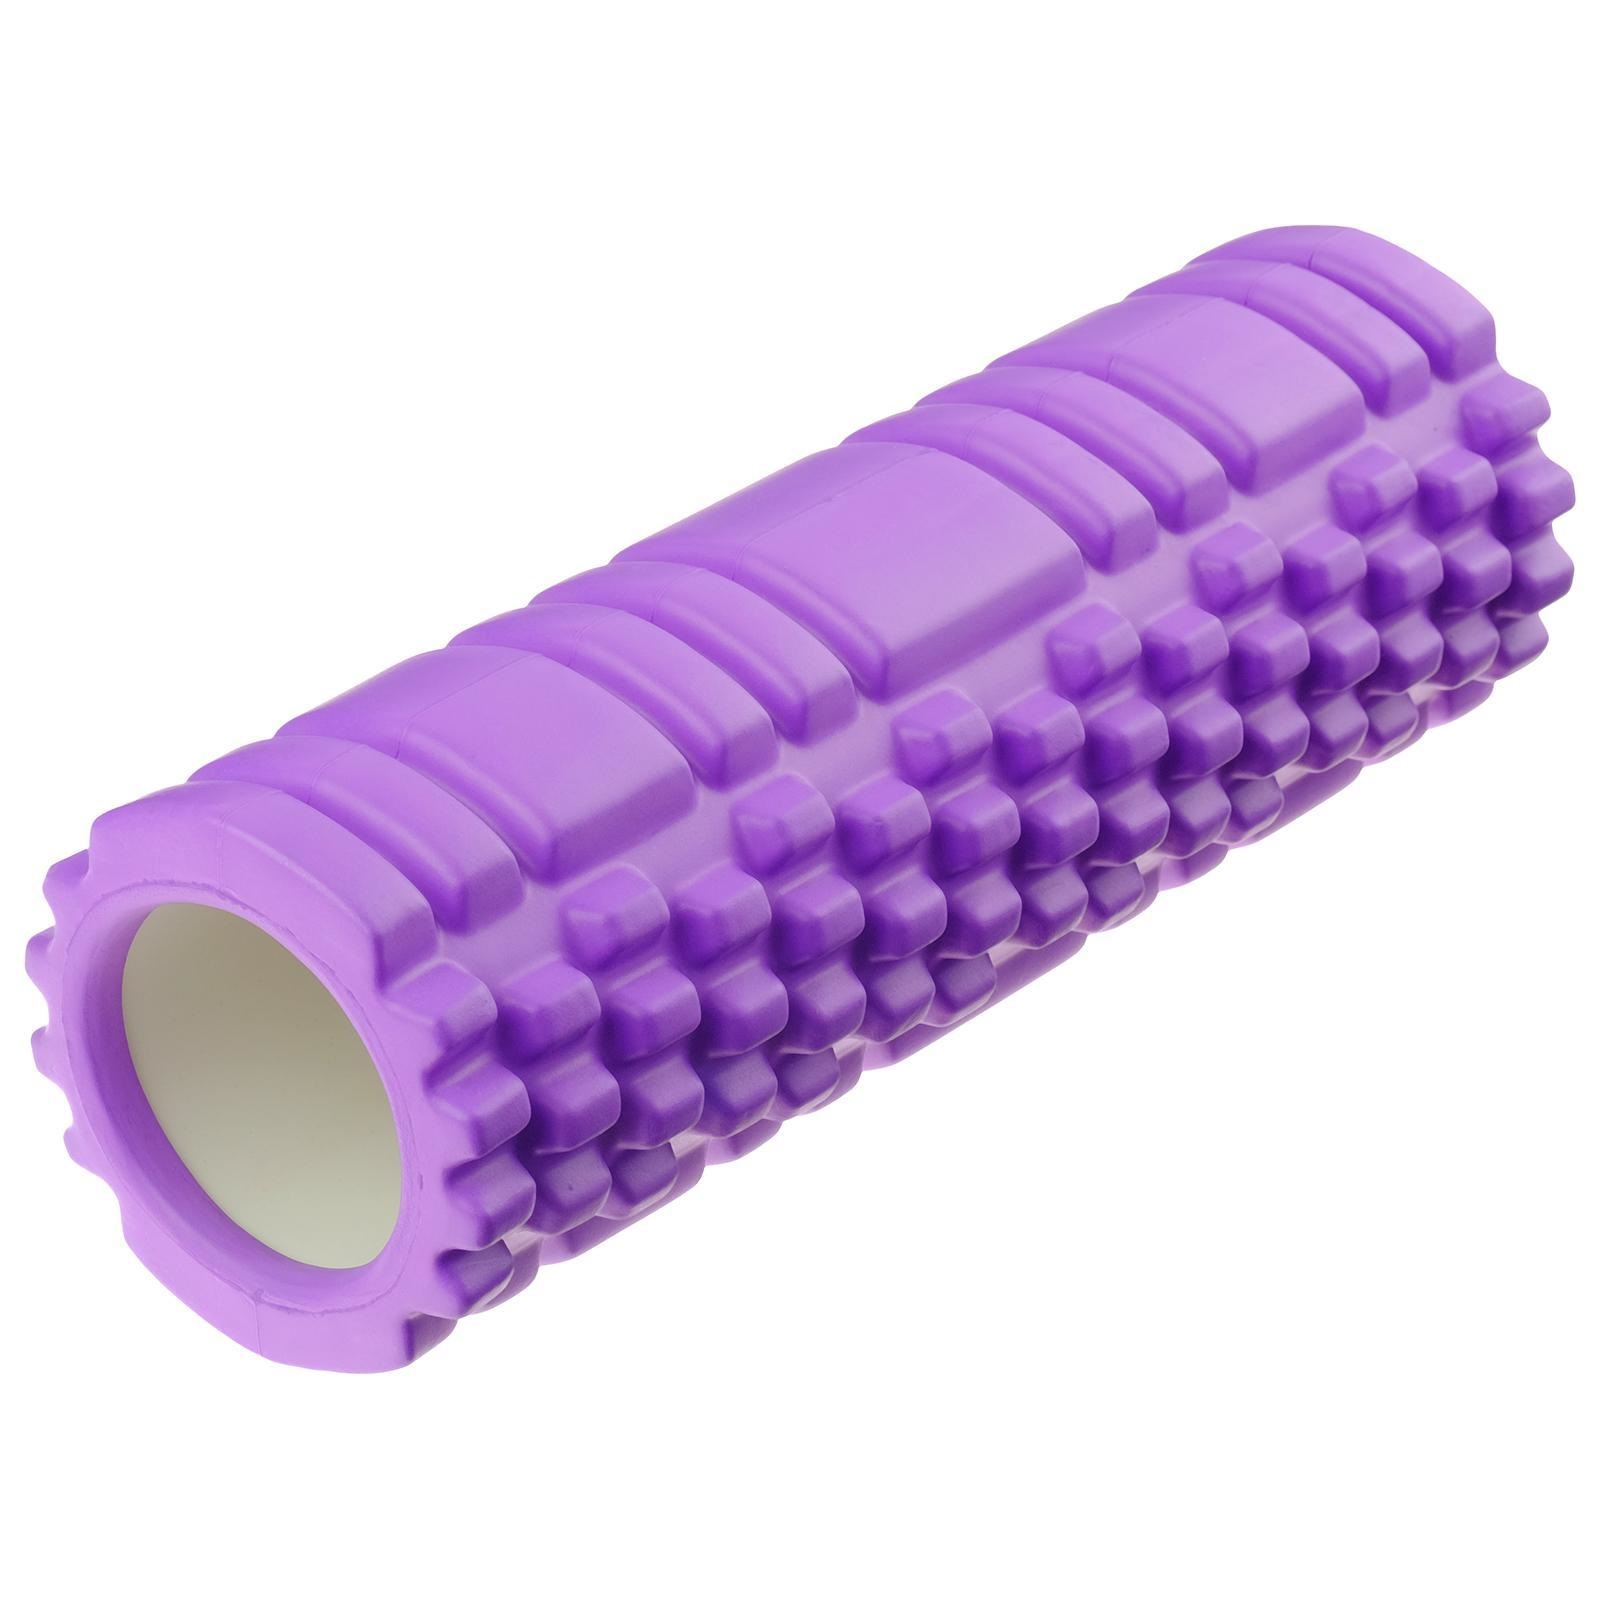 Ролик для йоги и пилатеса Sangh 3551199 30х10 см, фиолетовый